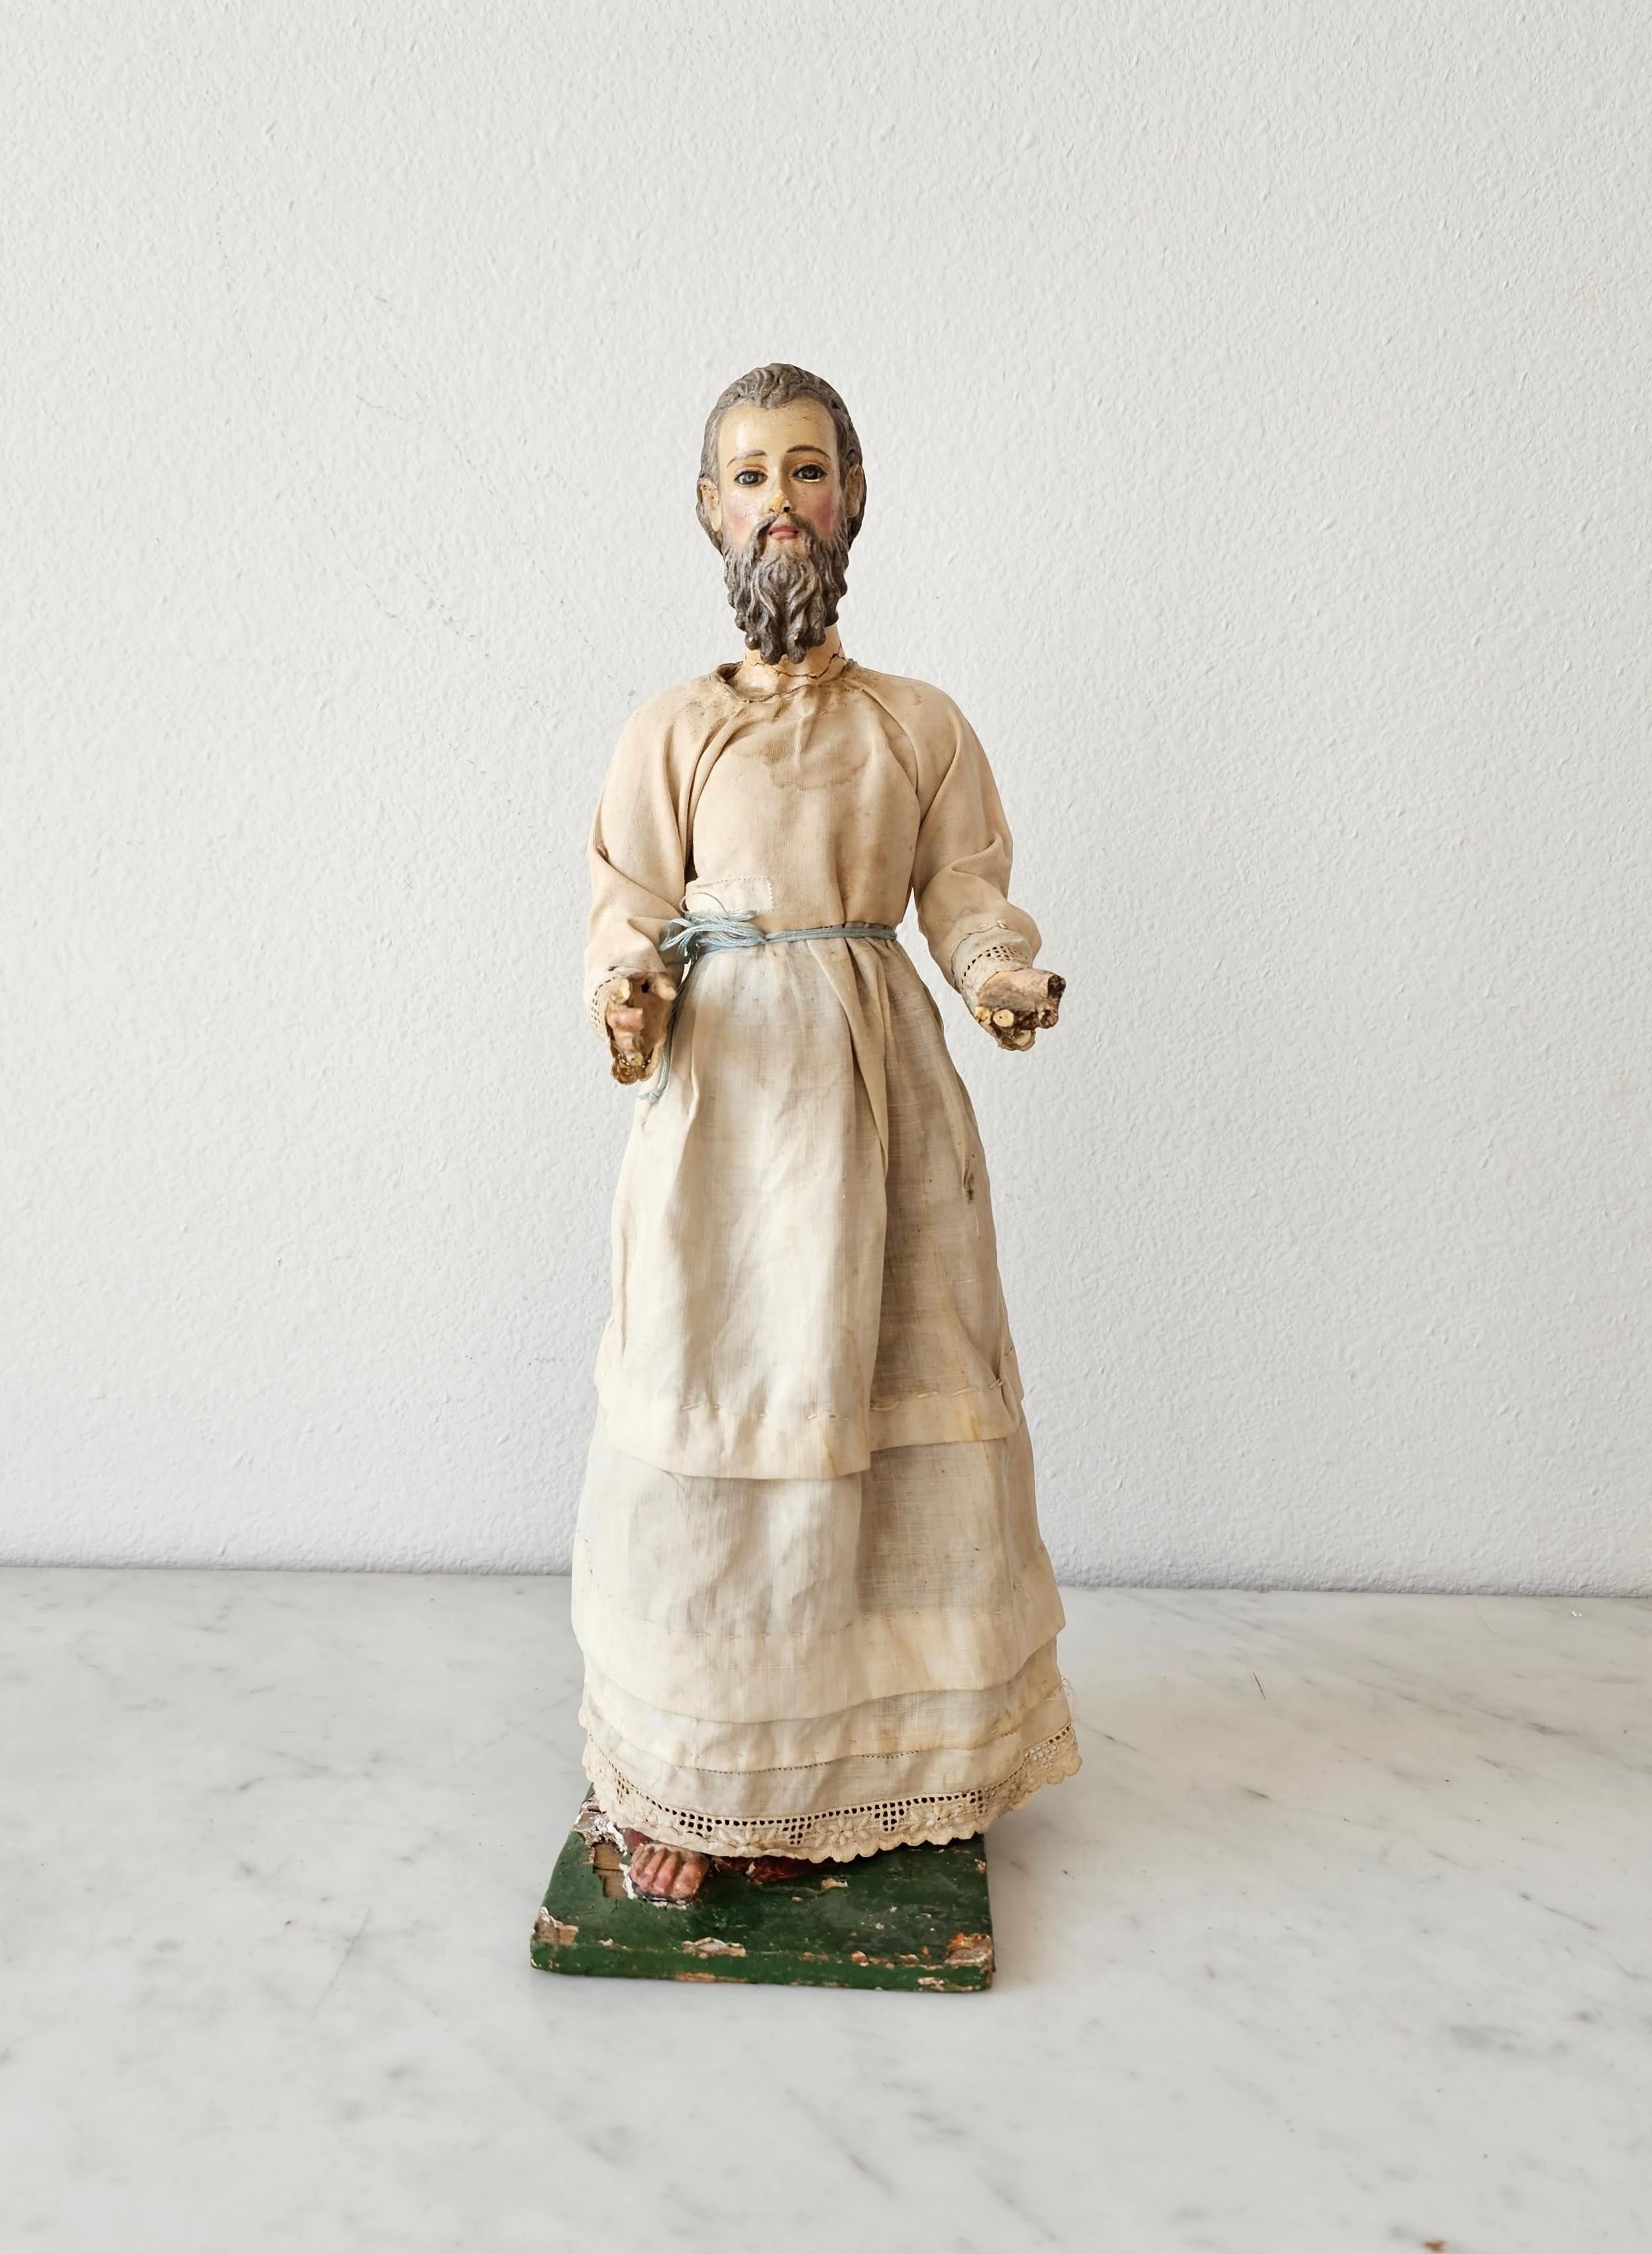 Eine seltene spanische oder italienische Santo-Skulptur aus handgeschnitztem, polychrom bemaltem Holz mit eingesetzten farbigen Glasaugen, originaler weißer Gewandung und späterem Holzrosenkranz.

Die außergewöhnlich realistisch ausgeführte